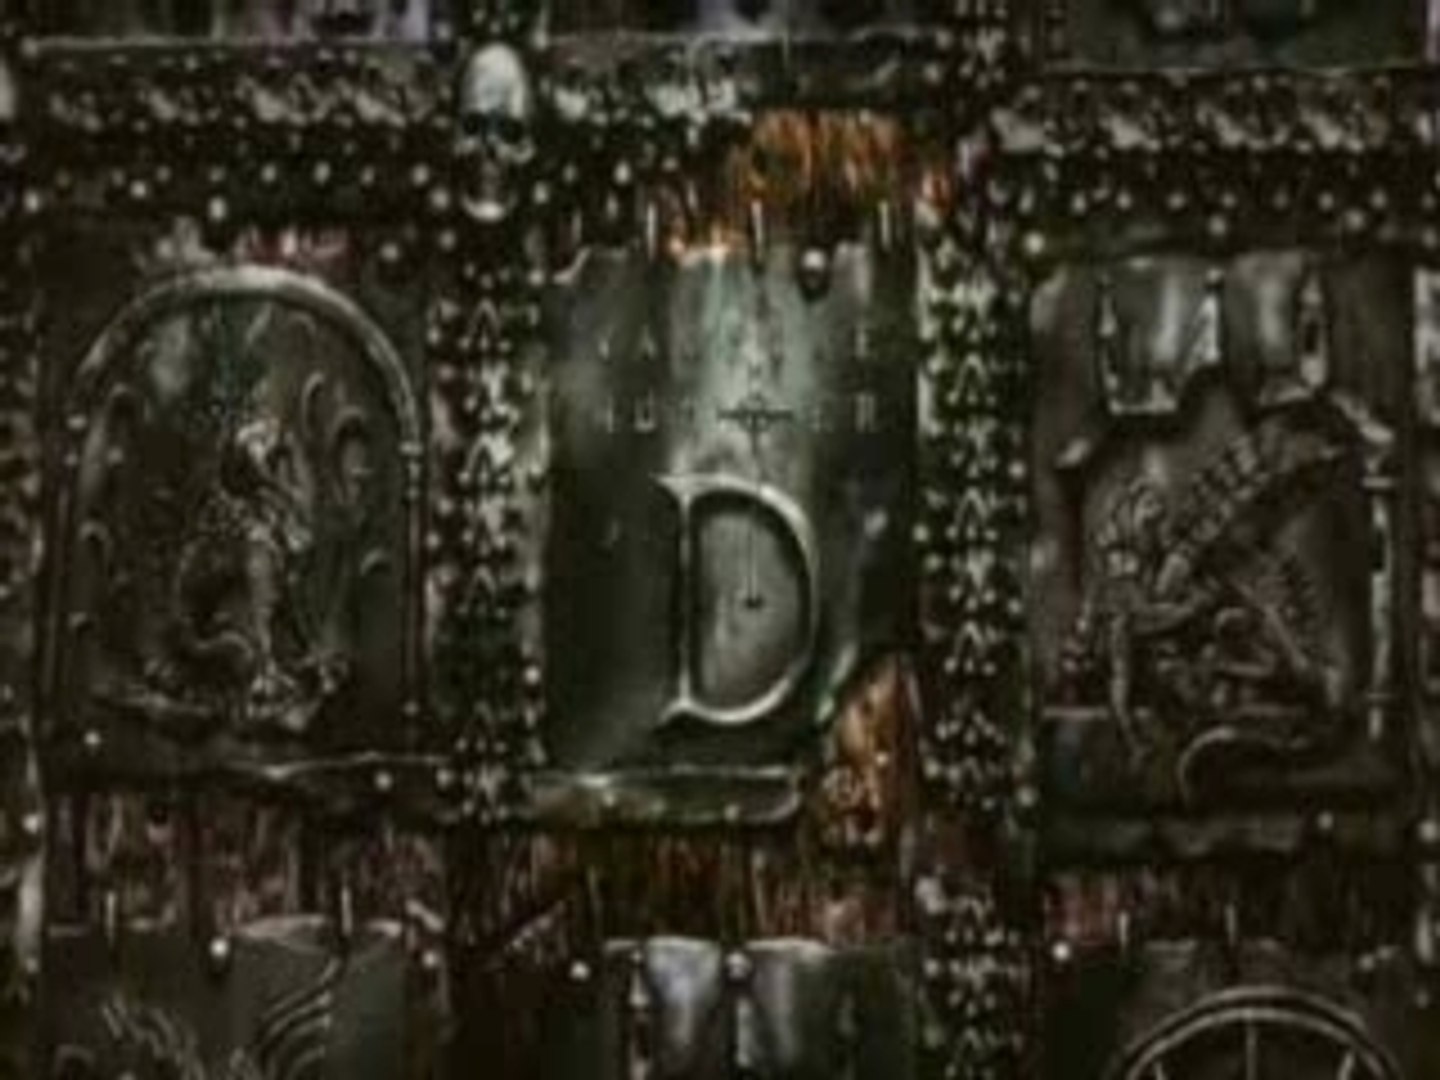 Vampire Hunter D-Bloodlust (2000) - Legendado - PTBR - Vídeo Dailymotion